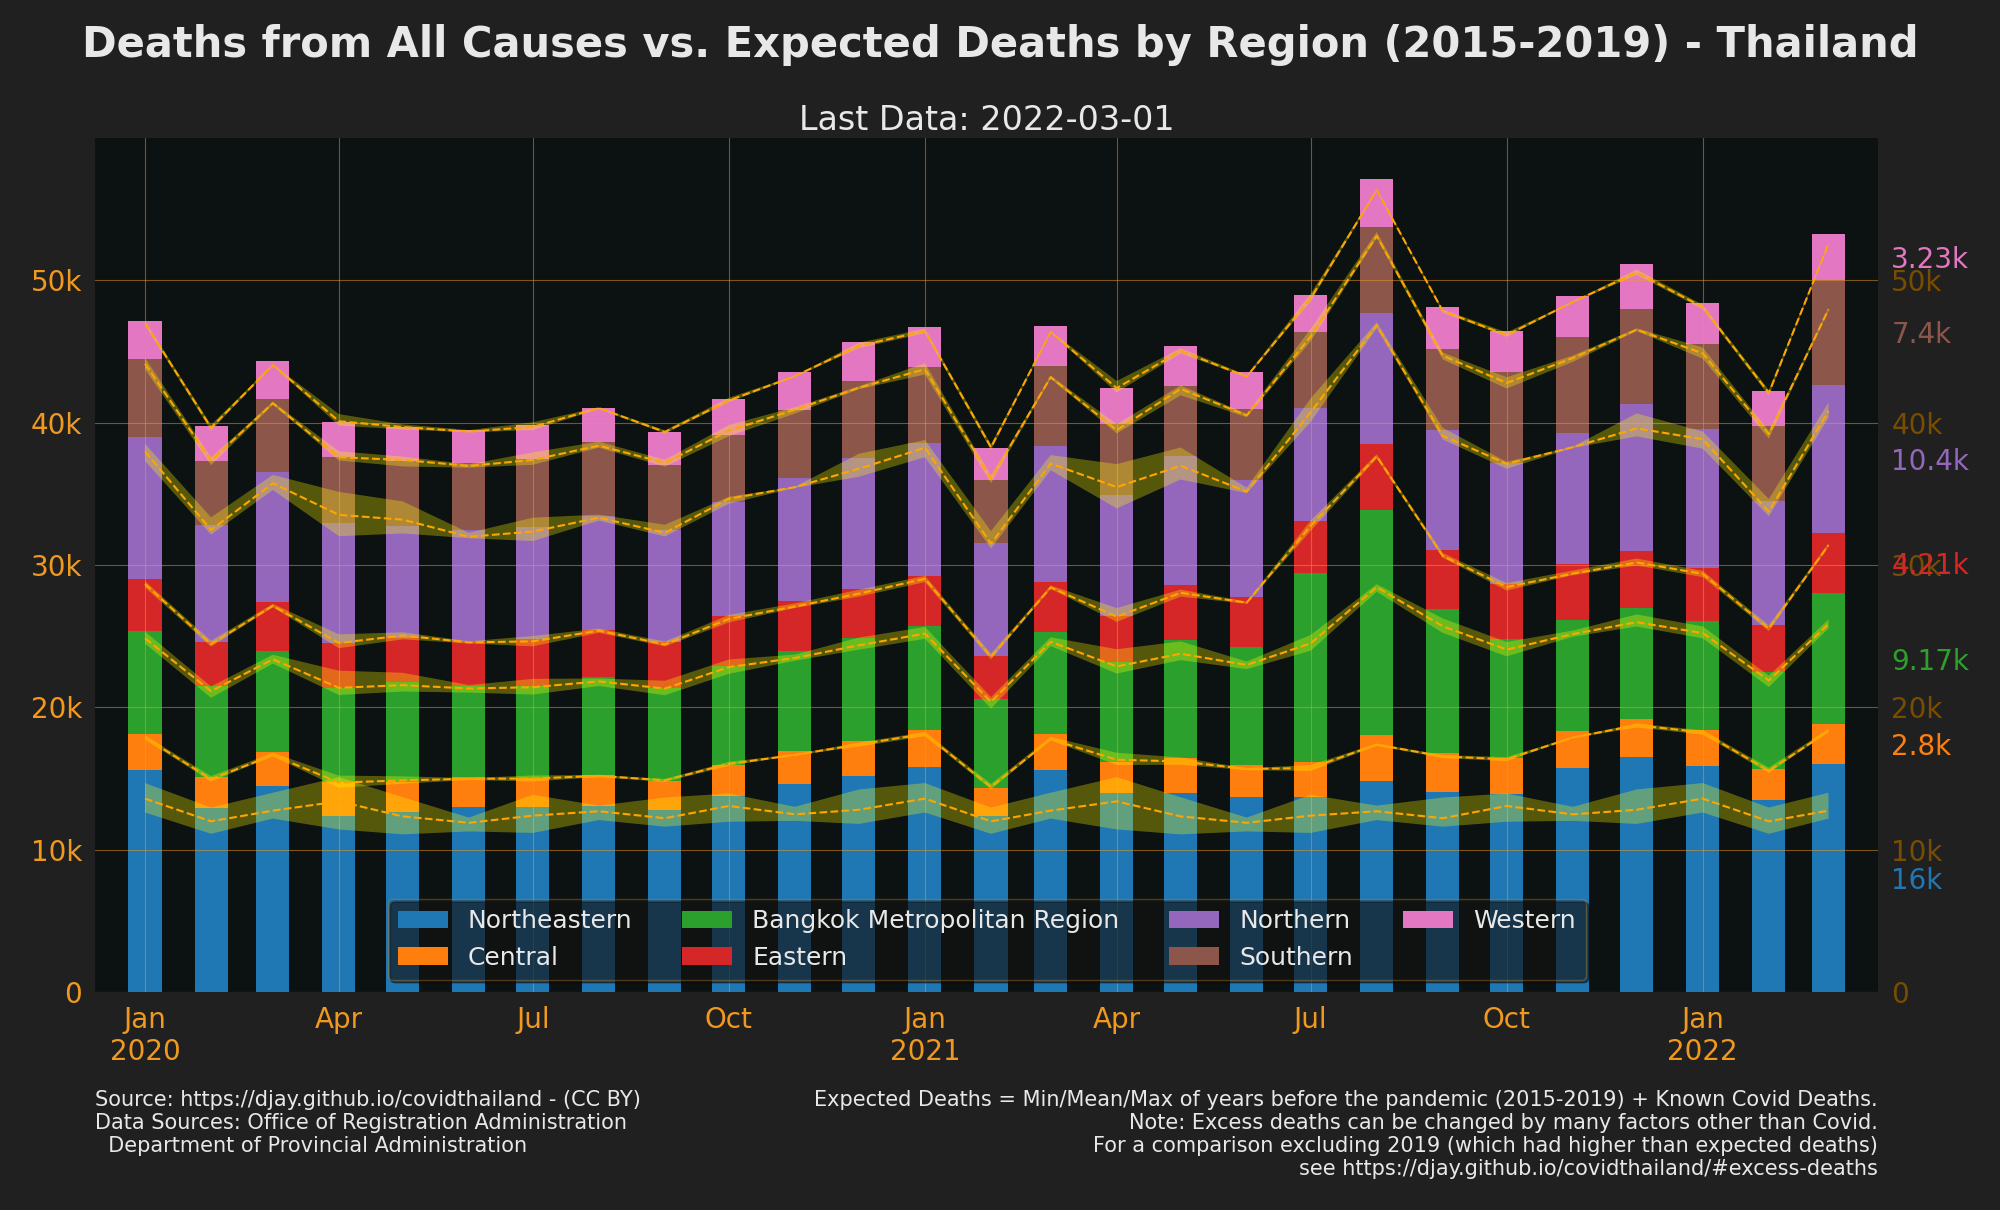 Thailand Excess Deaths by Region